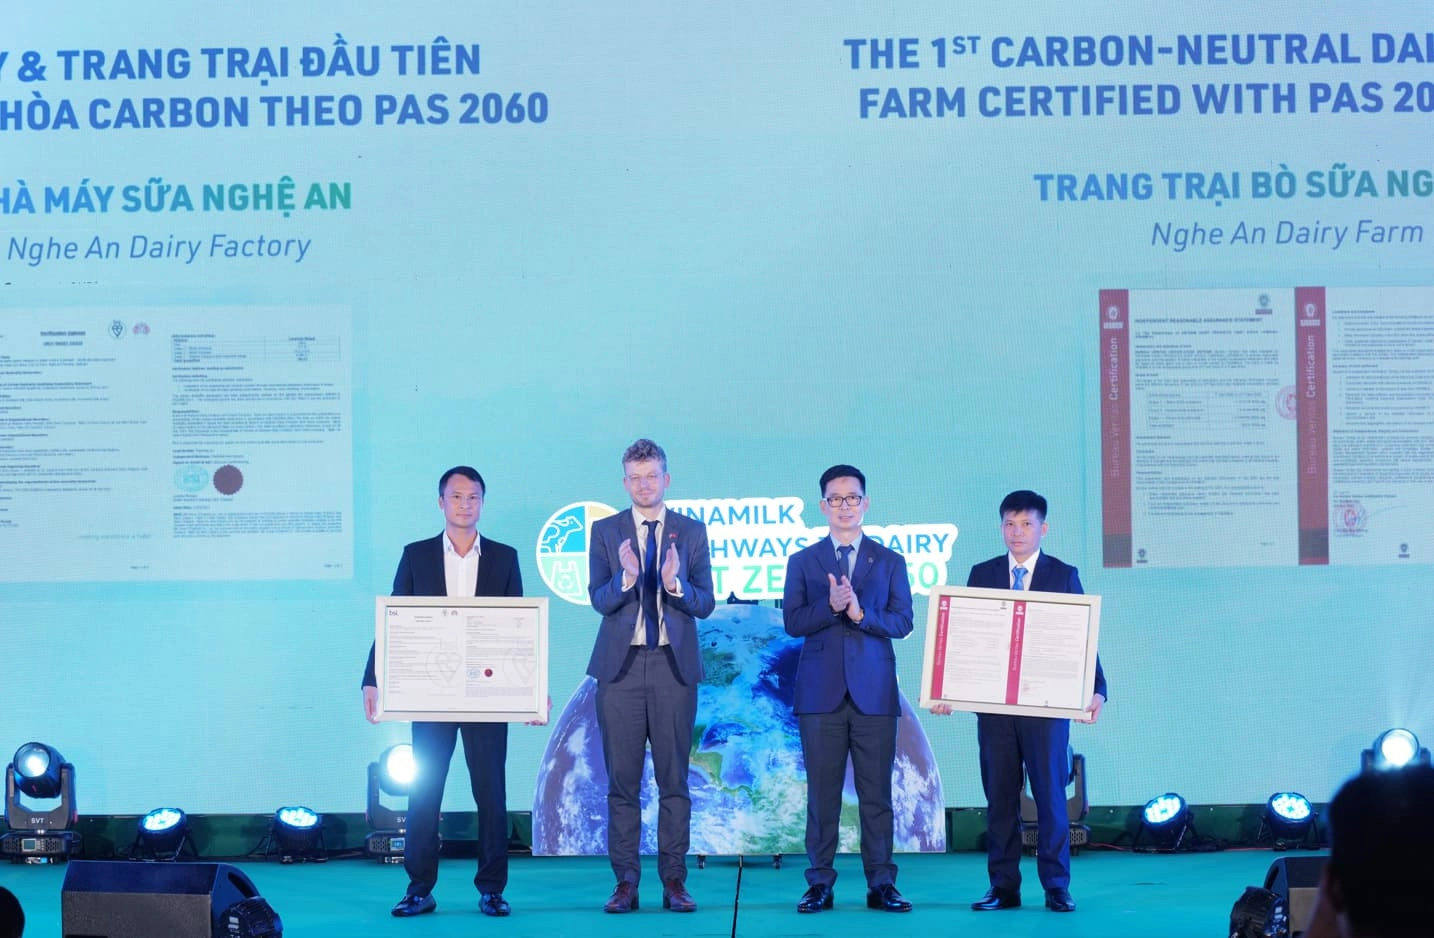 Đại diện Vinamilk nhận chứng nhận đạt trung hòa carbon theo tiêu chuẩn PAS 2060:2014 cho nhà máy sữa Nghệ An và trang trại bò sữa Nghệ An hồi tháng 6 vừa qua. 